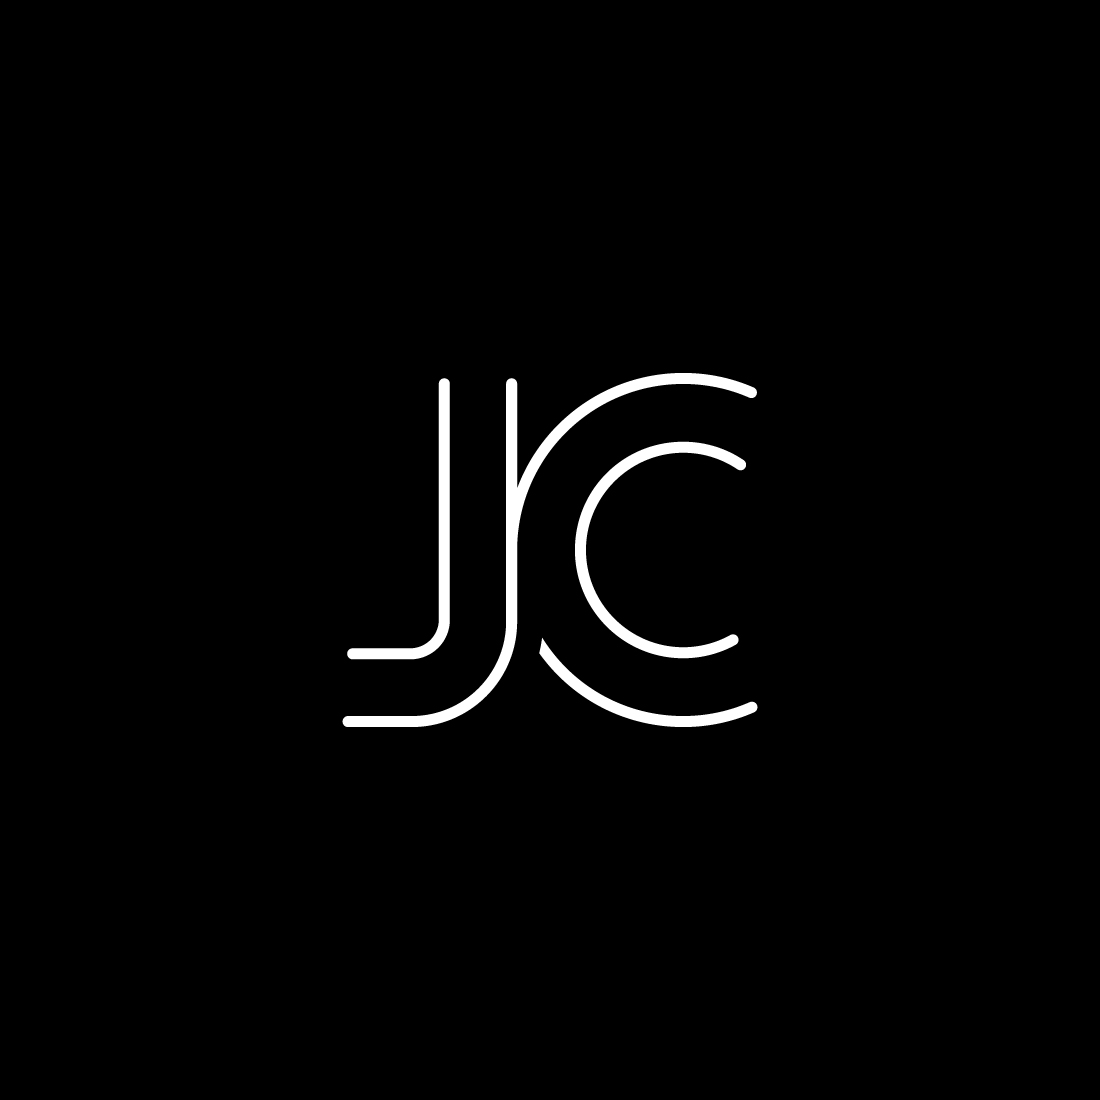 JC Logo Design (school work) by M3k0 on DeviantArt